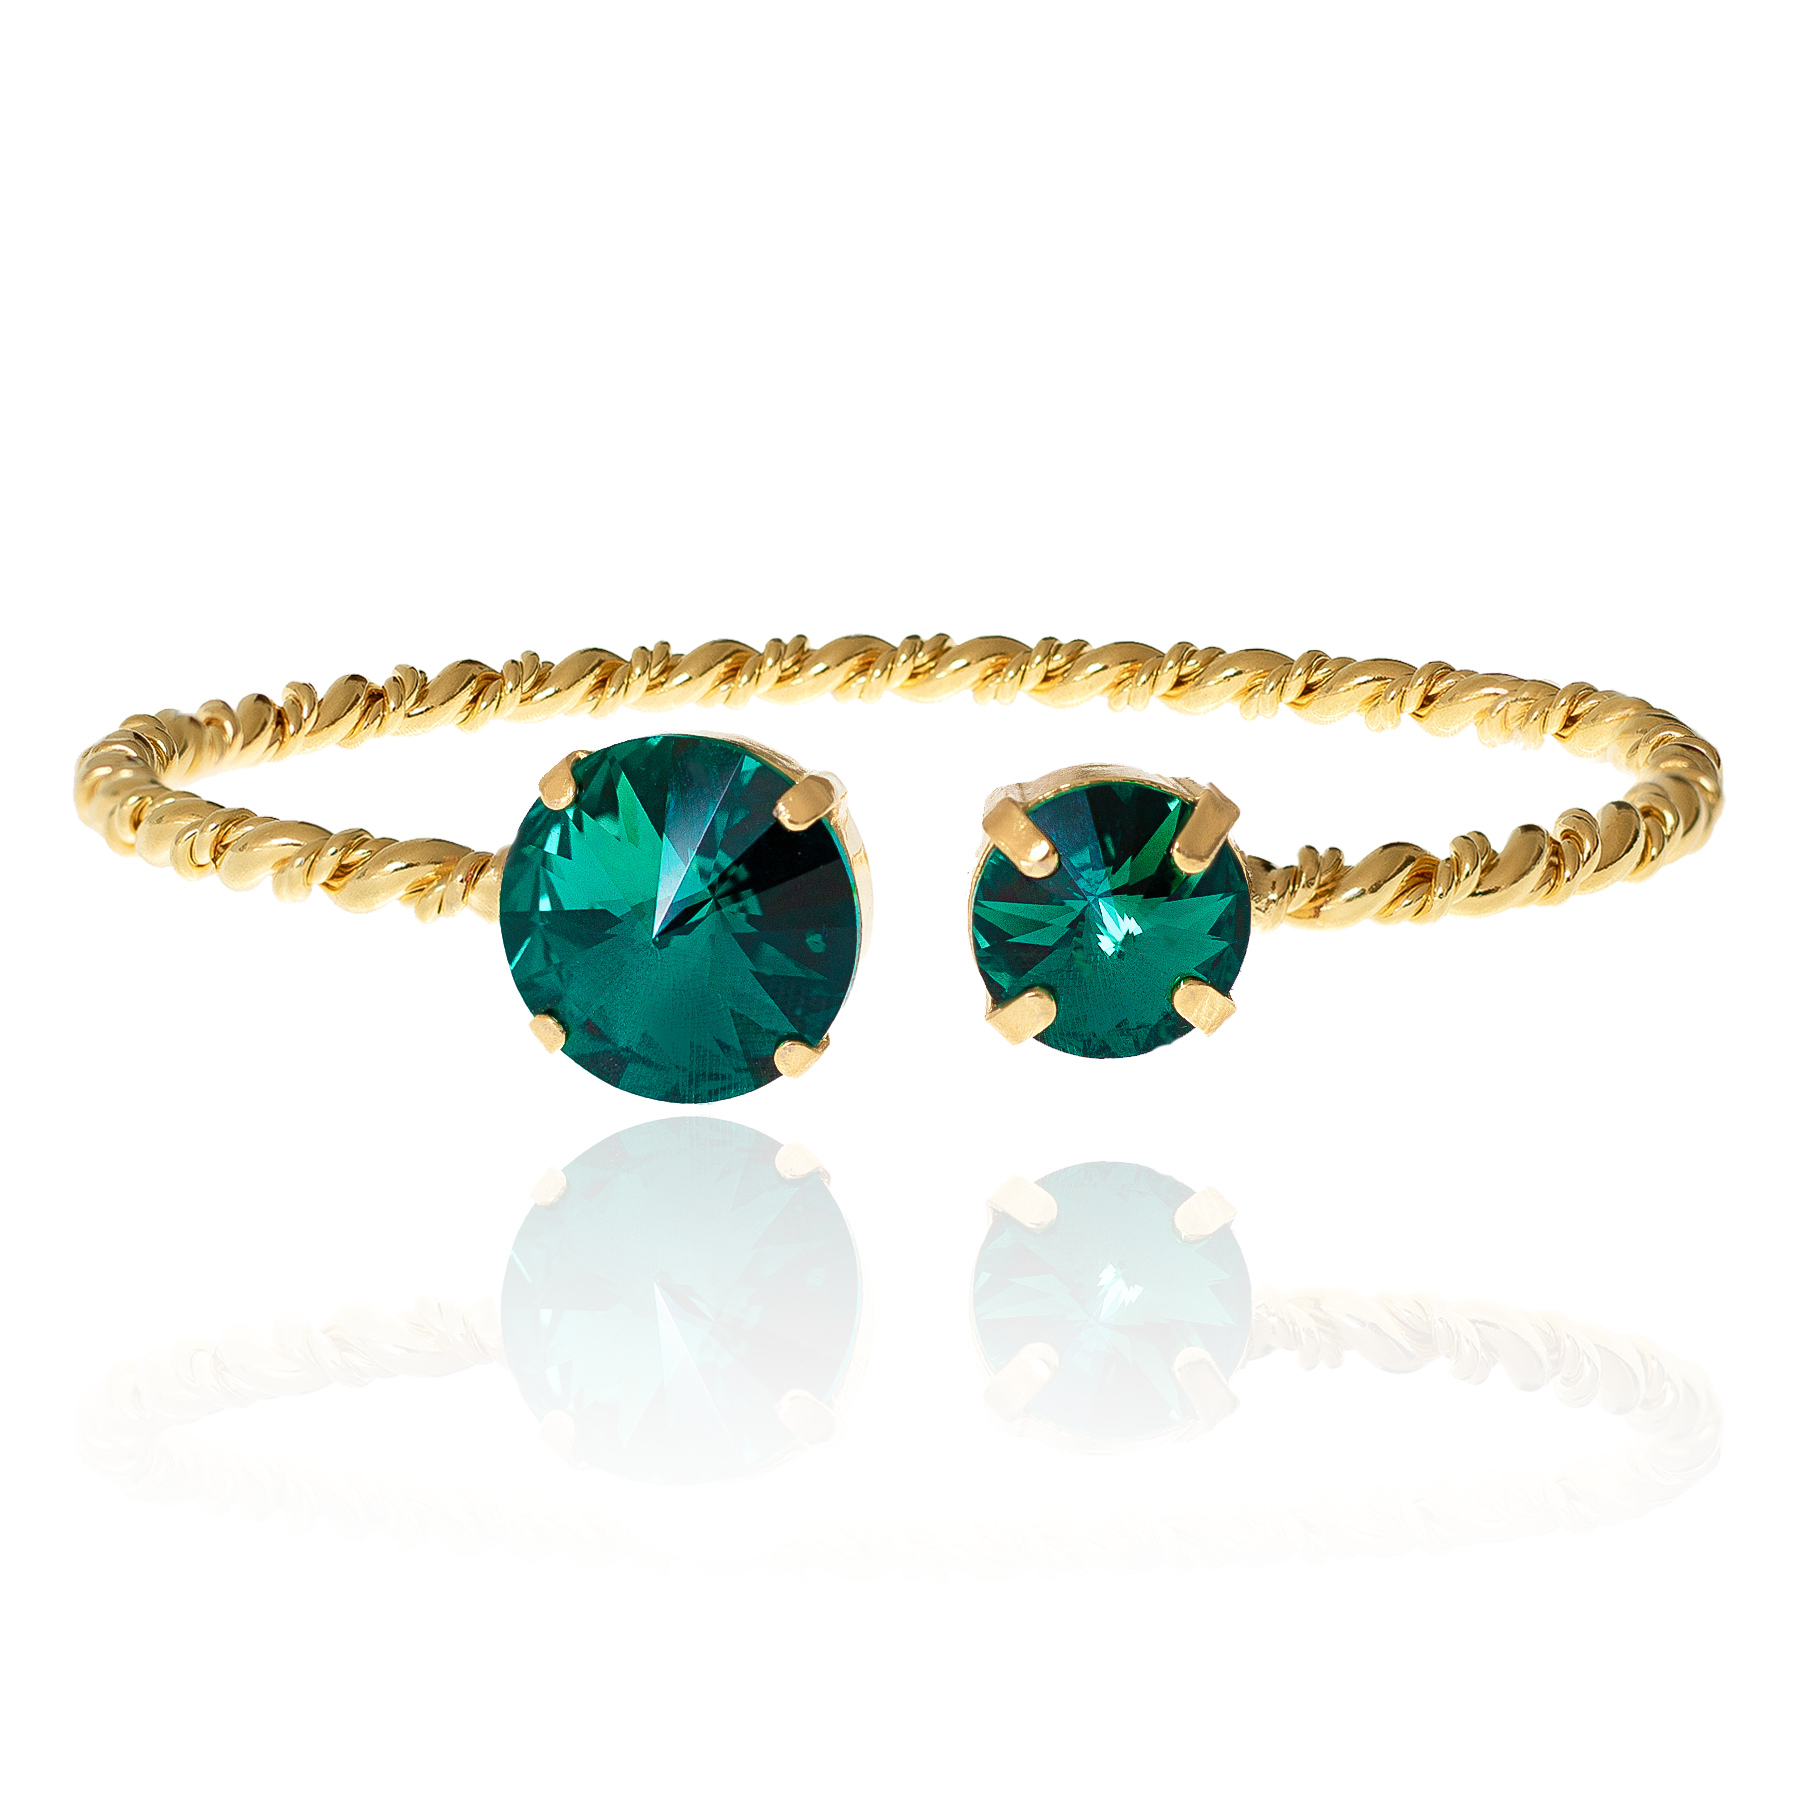 Stacking bracelet, stacking bracelet sets, tennis bracelet, emerald bracelet, gold bangle